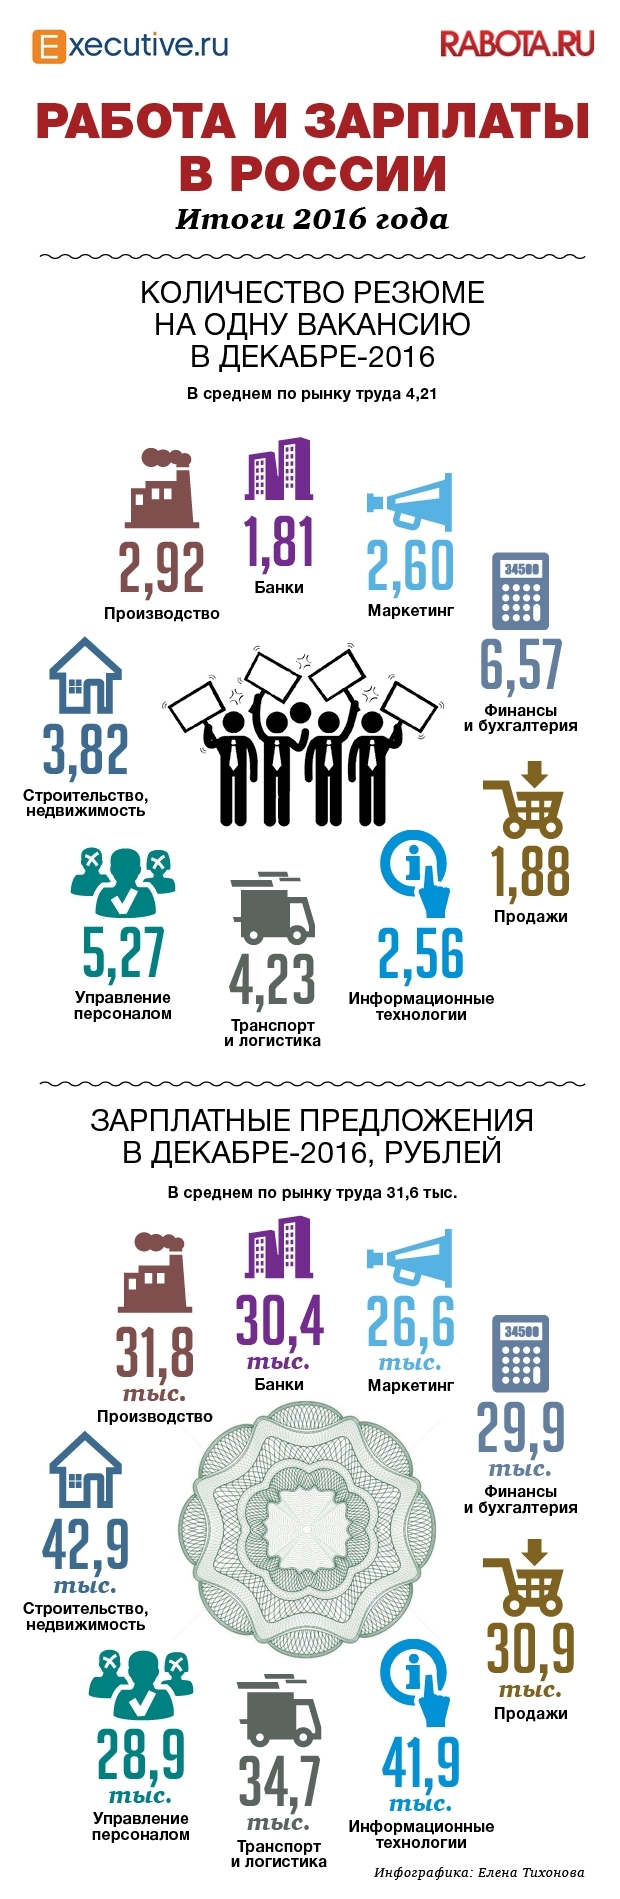 Количество вакансий, резюме и зарплаты в России в 2016 году